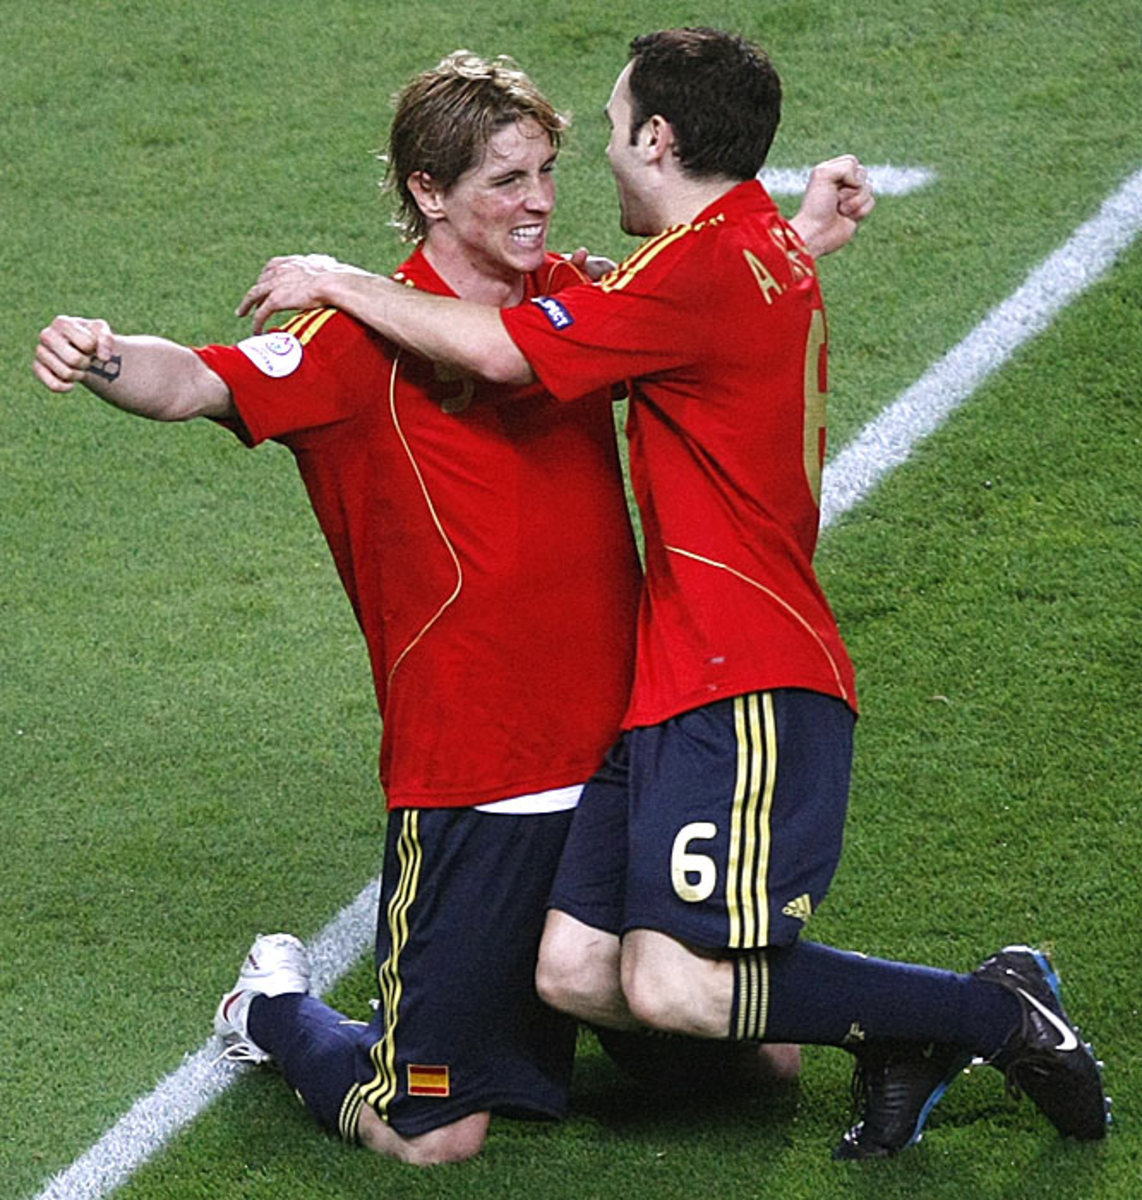 Spain 1, Germany 0